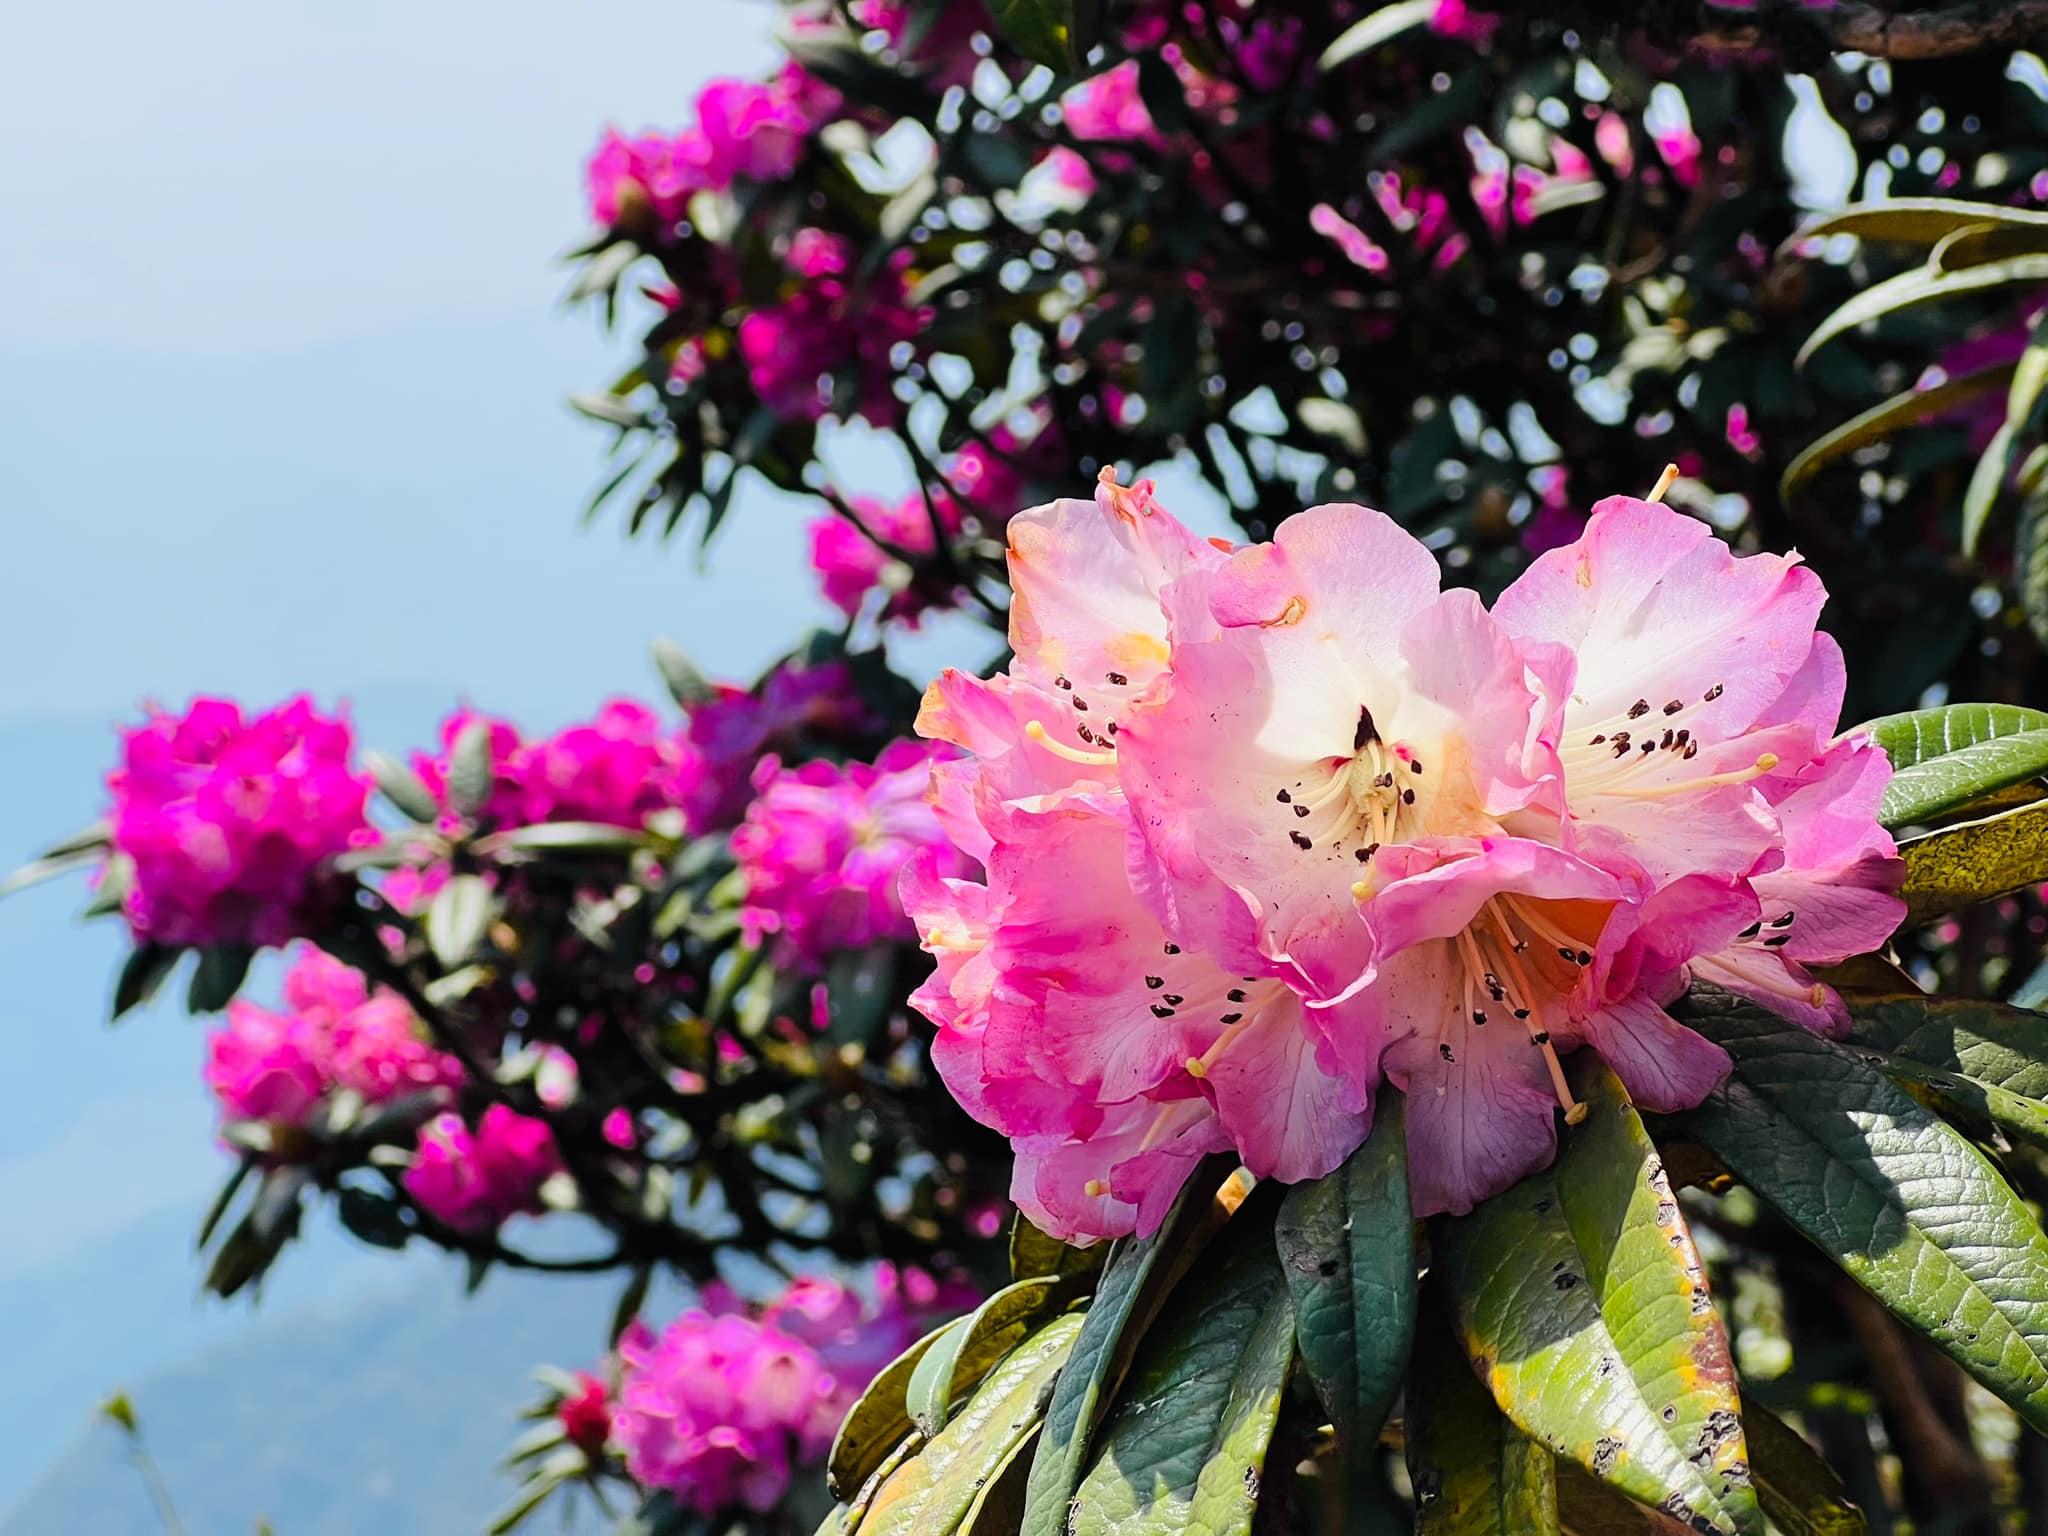 Trên đường leo đỉnh Đỗ Quyên và đỉnh Putaleng du khách có thể thấy hoa nở thành từng chùm với đủ sắc màu từ đỏ, hồng, trắng tới vàng, cam, tím. Cây đỗ quyên cổ thụ ở đây cao từ 2m đến 5m, tán không quá rộng nhưng hoa và lá mọc dày. 